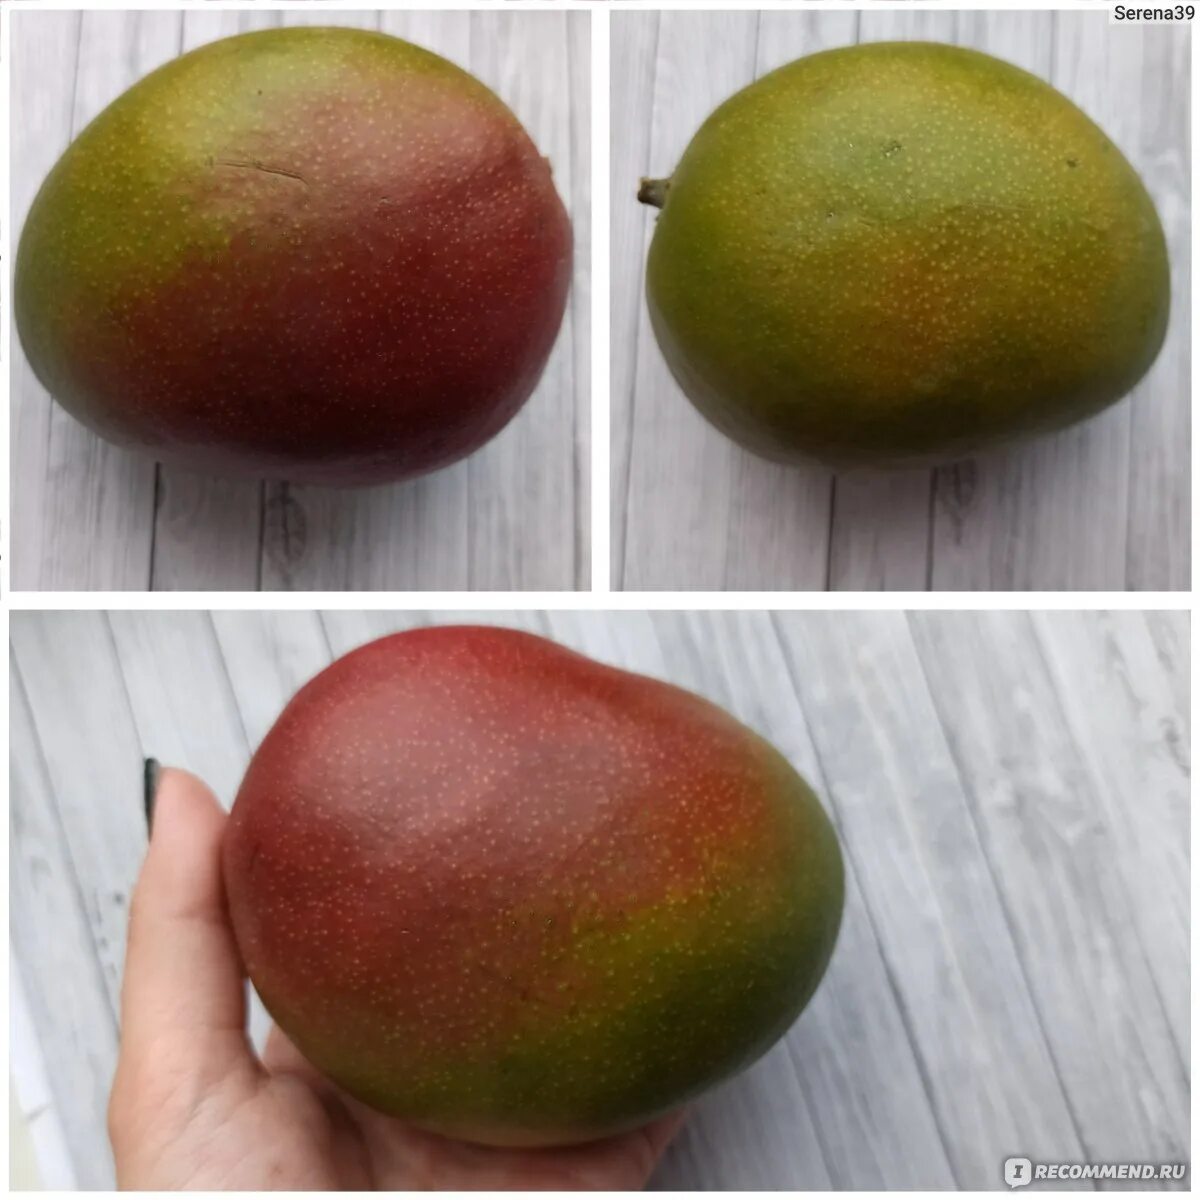 Какой фрукт не созревает в сочи манго. Манго сорт Альфонсо. Манго (сорт кат Чу). Манго созревший плод. Степень зрелости манго.